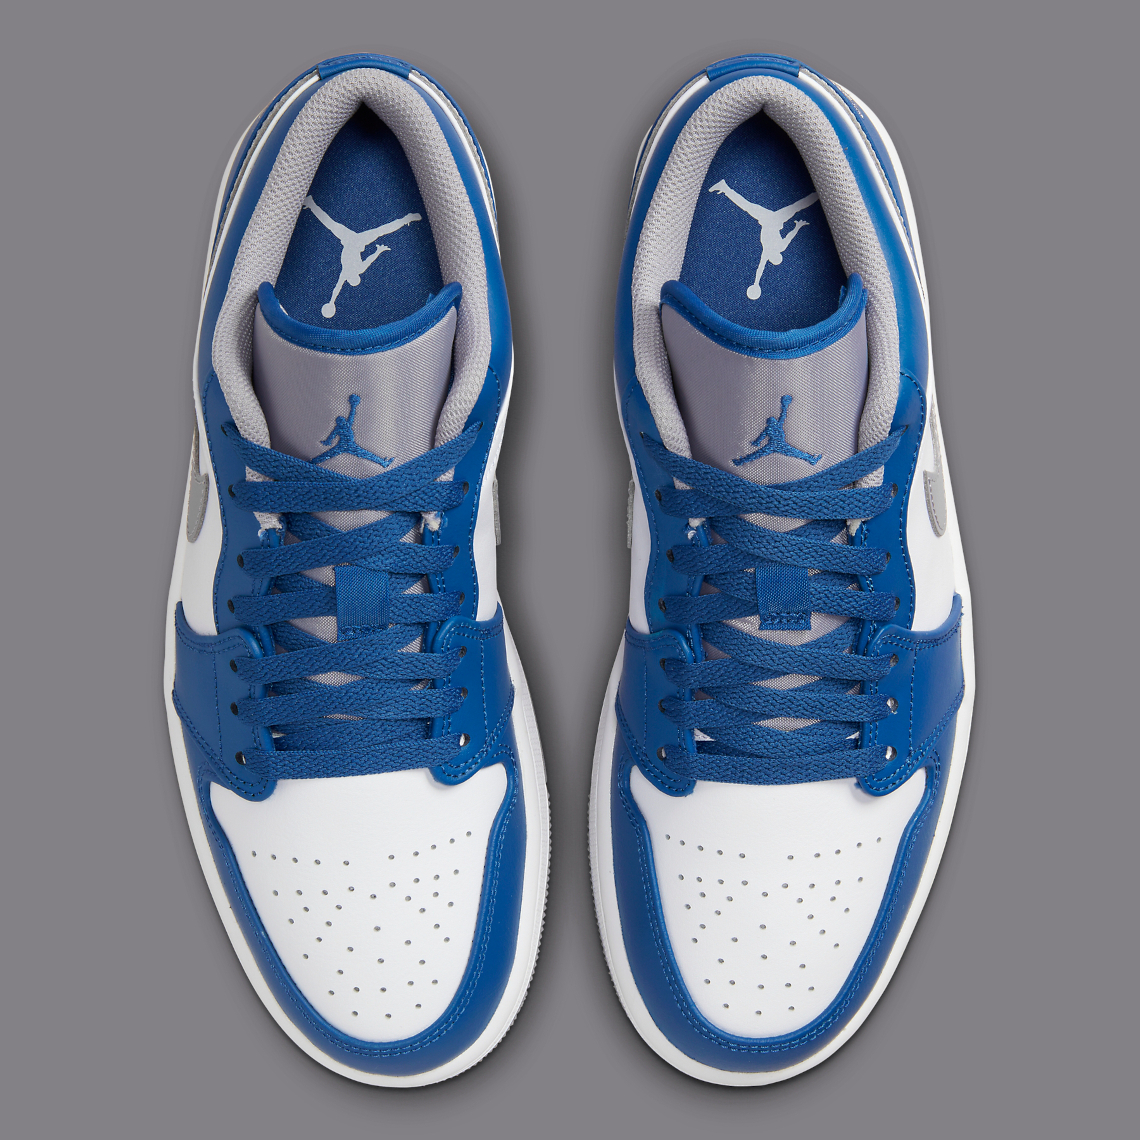 Air Jordan 1 Low “True Blue” 553558-412 | SneakerNews.com